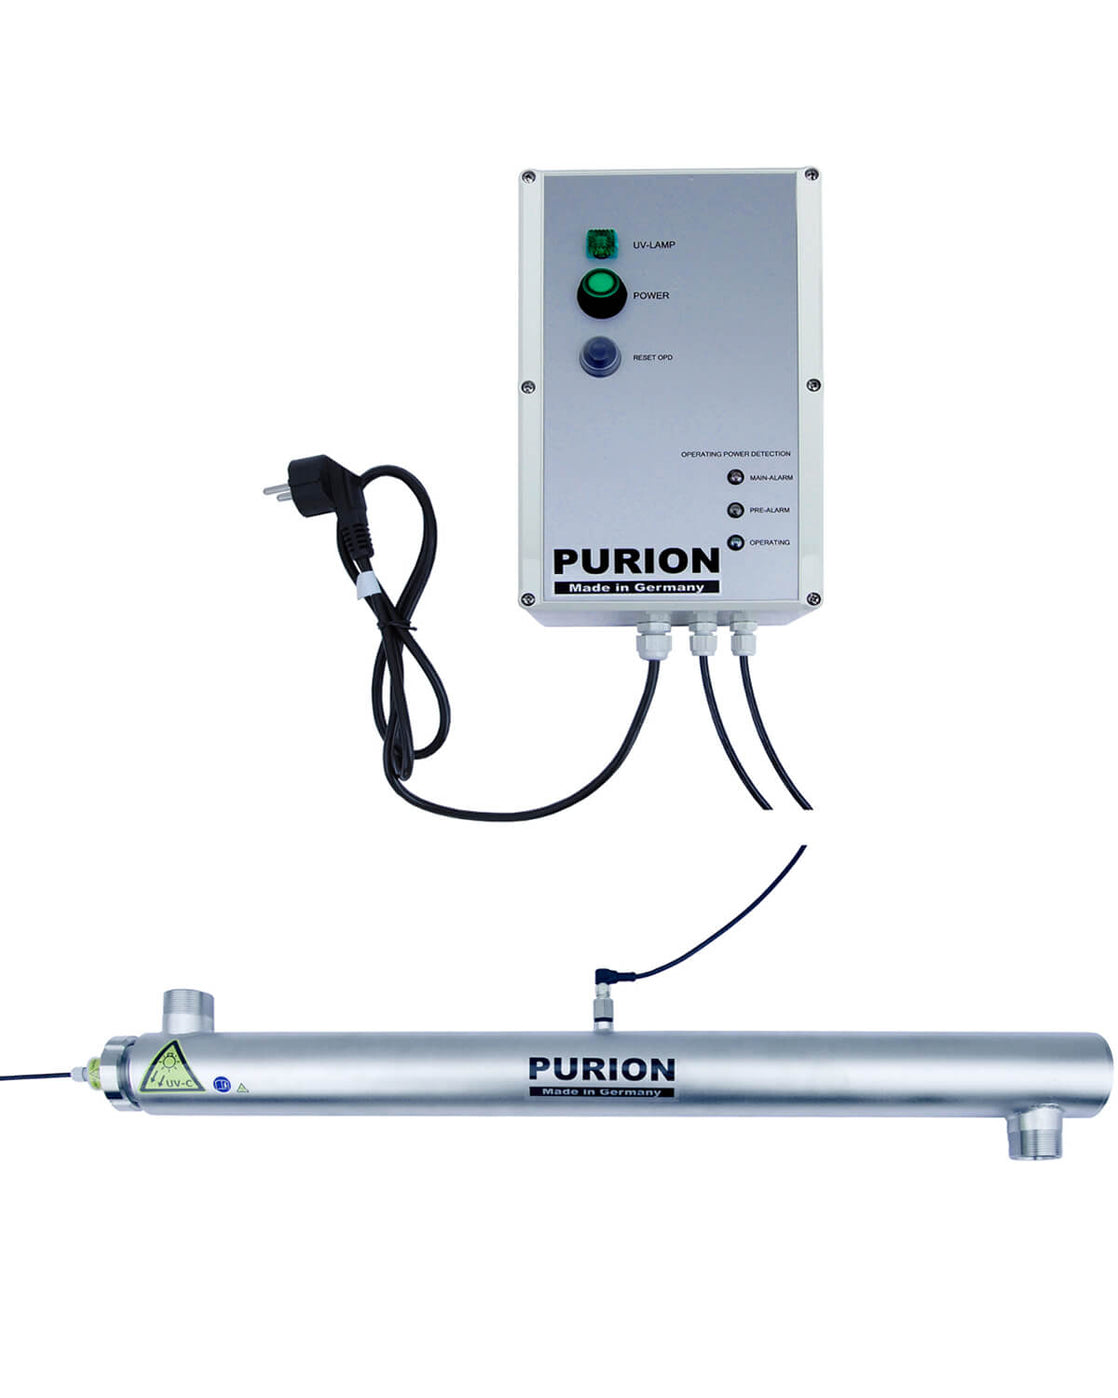 Die PURION GmbH bietet mit dem PURION 2501 OPD Extra UV-C-Desinfektions- und Reinigungsdienstleistungen für Pools an.